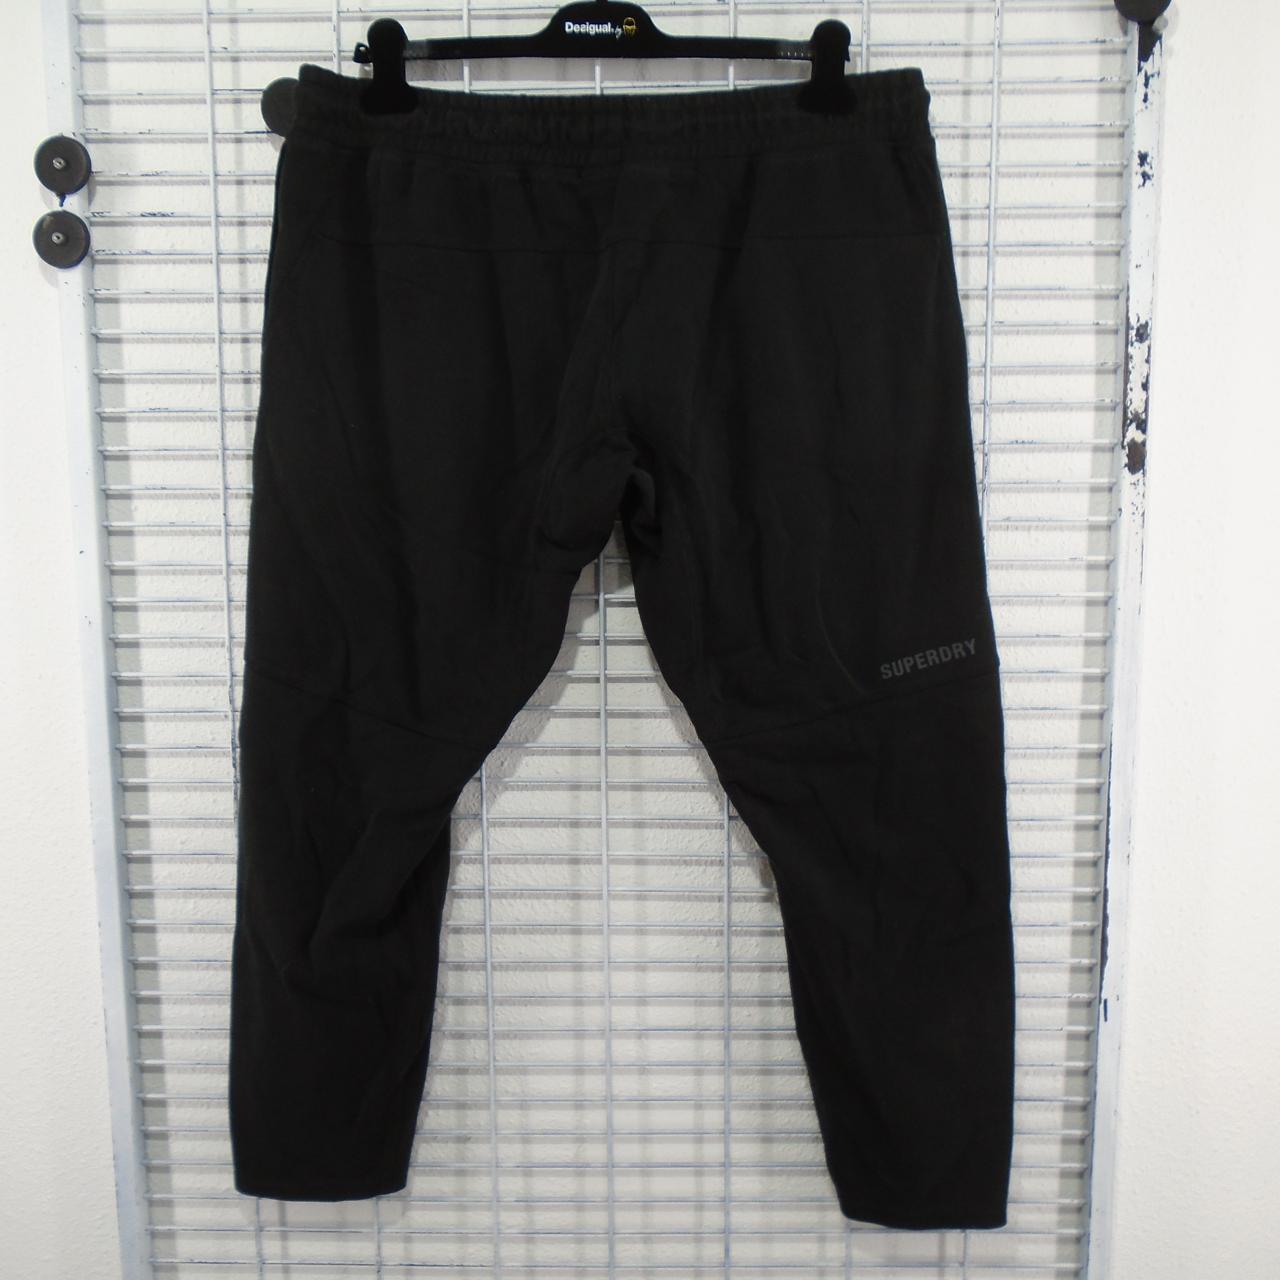 Pantalones de mujer Superdry. Negro. XL. Usado. Bien